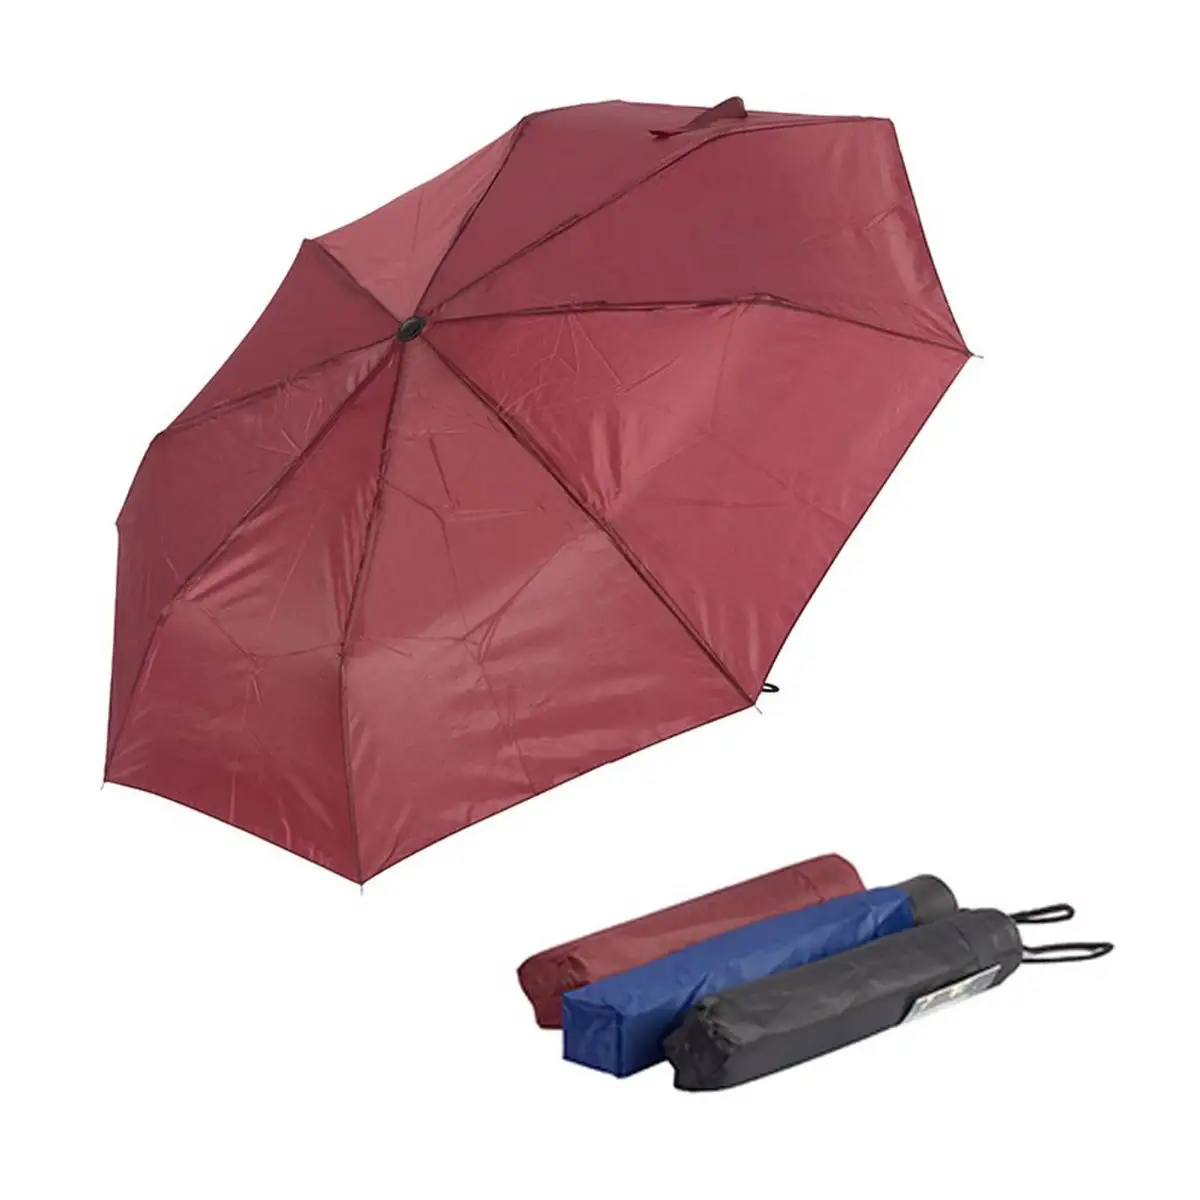 Parapluie pliable mini parapluie multicouleur 53 cm_9147. Plongez dans l'Univers de DIAYTAR SENEGAL - Où la Qualité et la Diversité se rencontrent. Parcourez nos rayons virtuels pour trouver des produits répondant à tous les besoins, du confort de votre foyer.